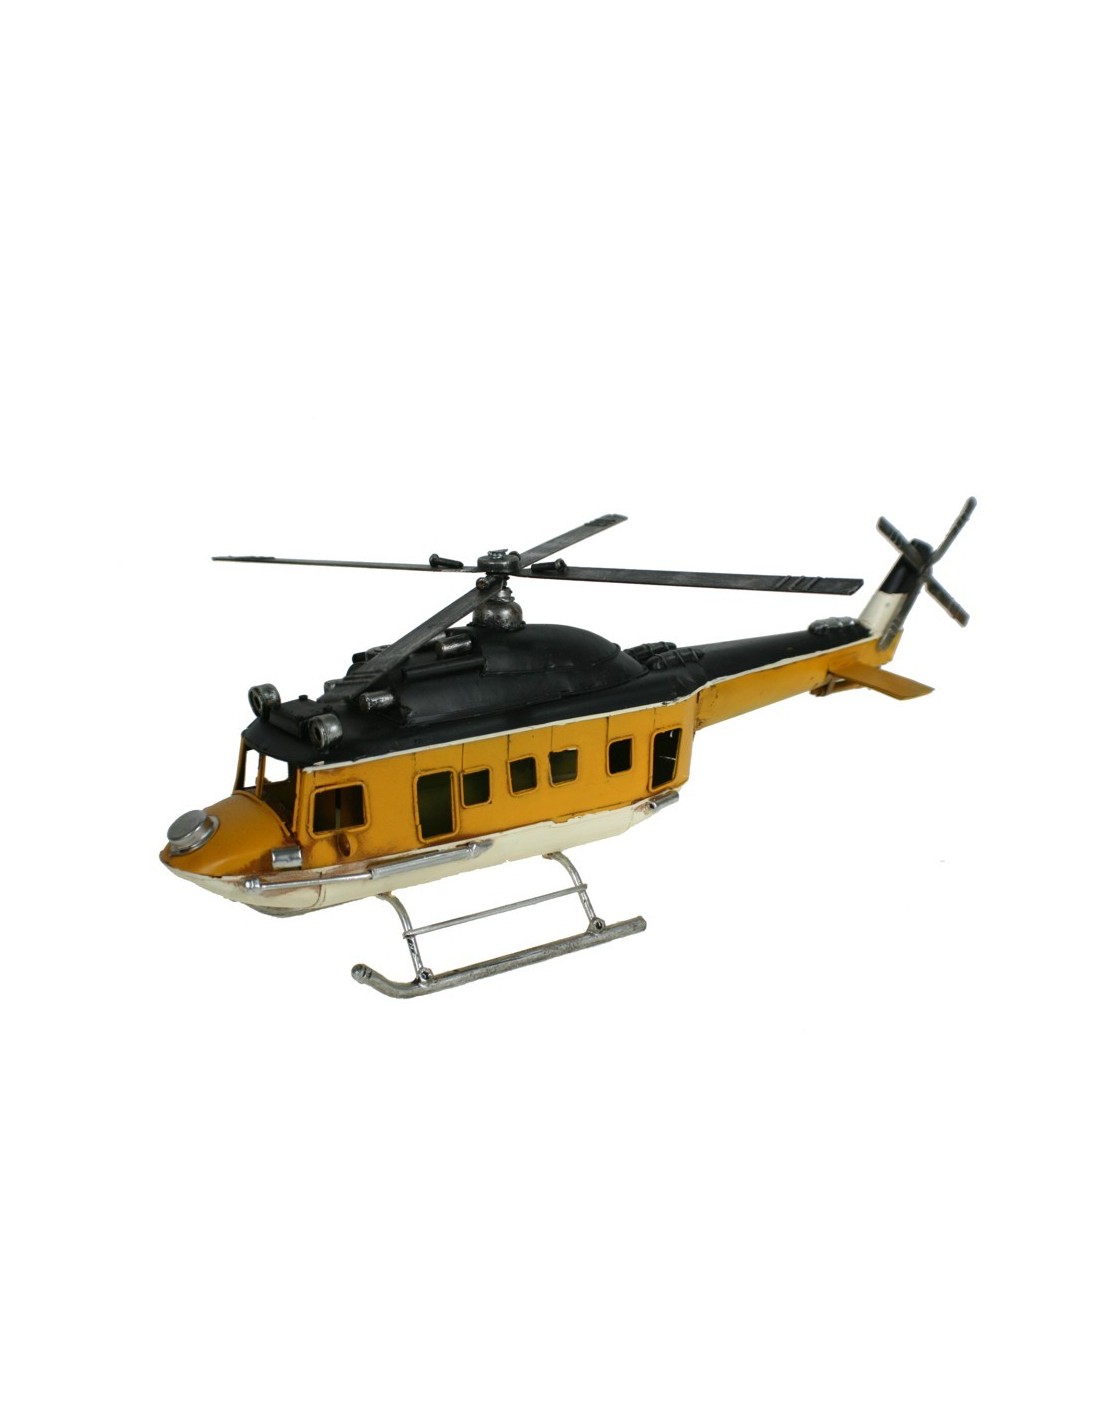 Grand hélicoptère 4 pales en métal jaune. Mesures: 50 cm.